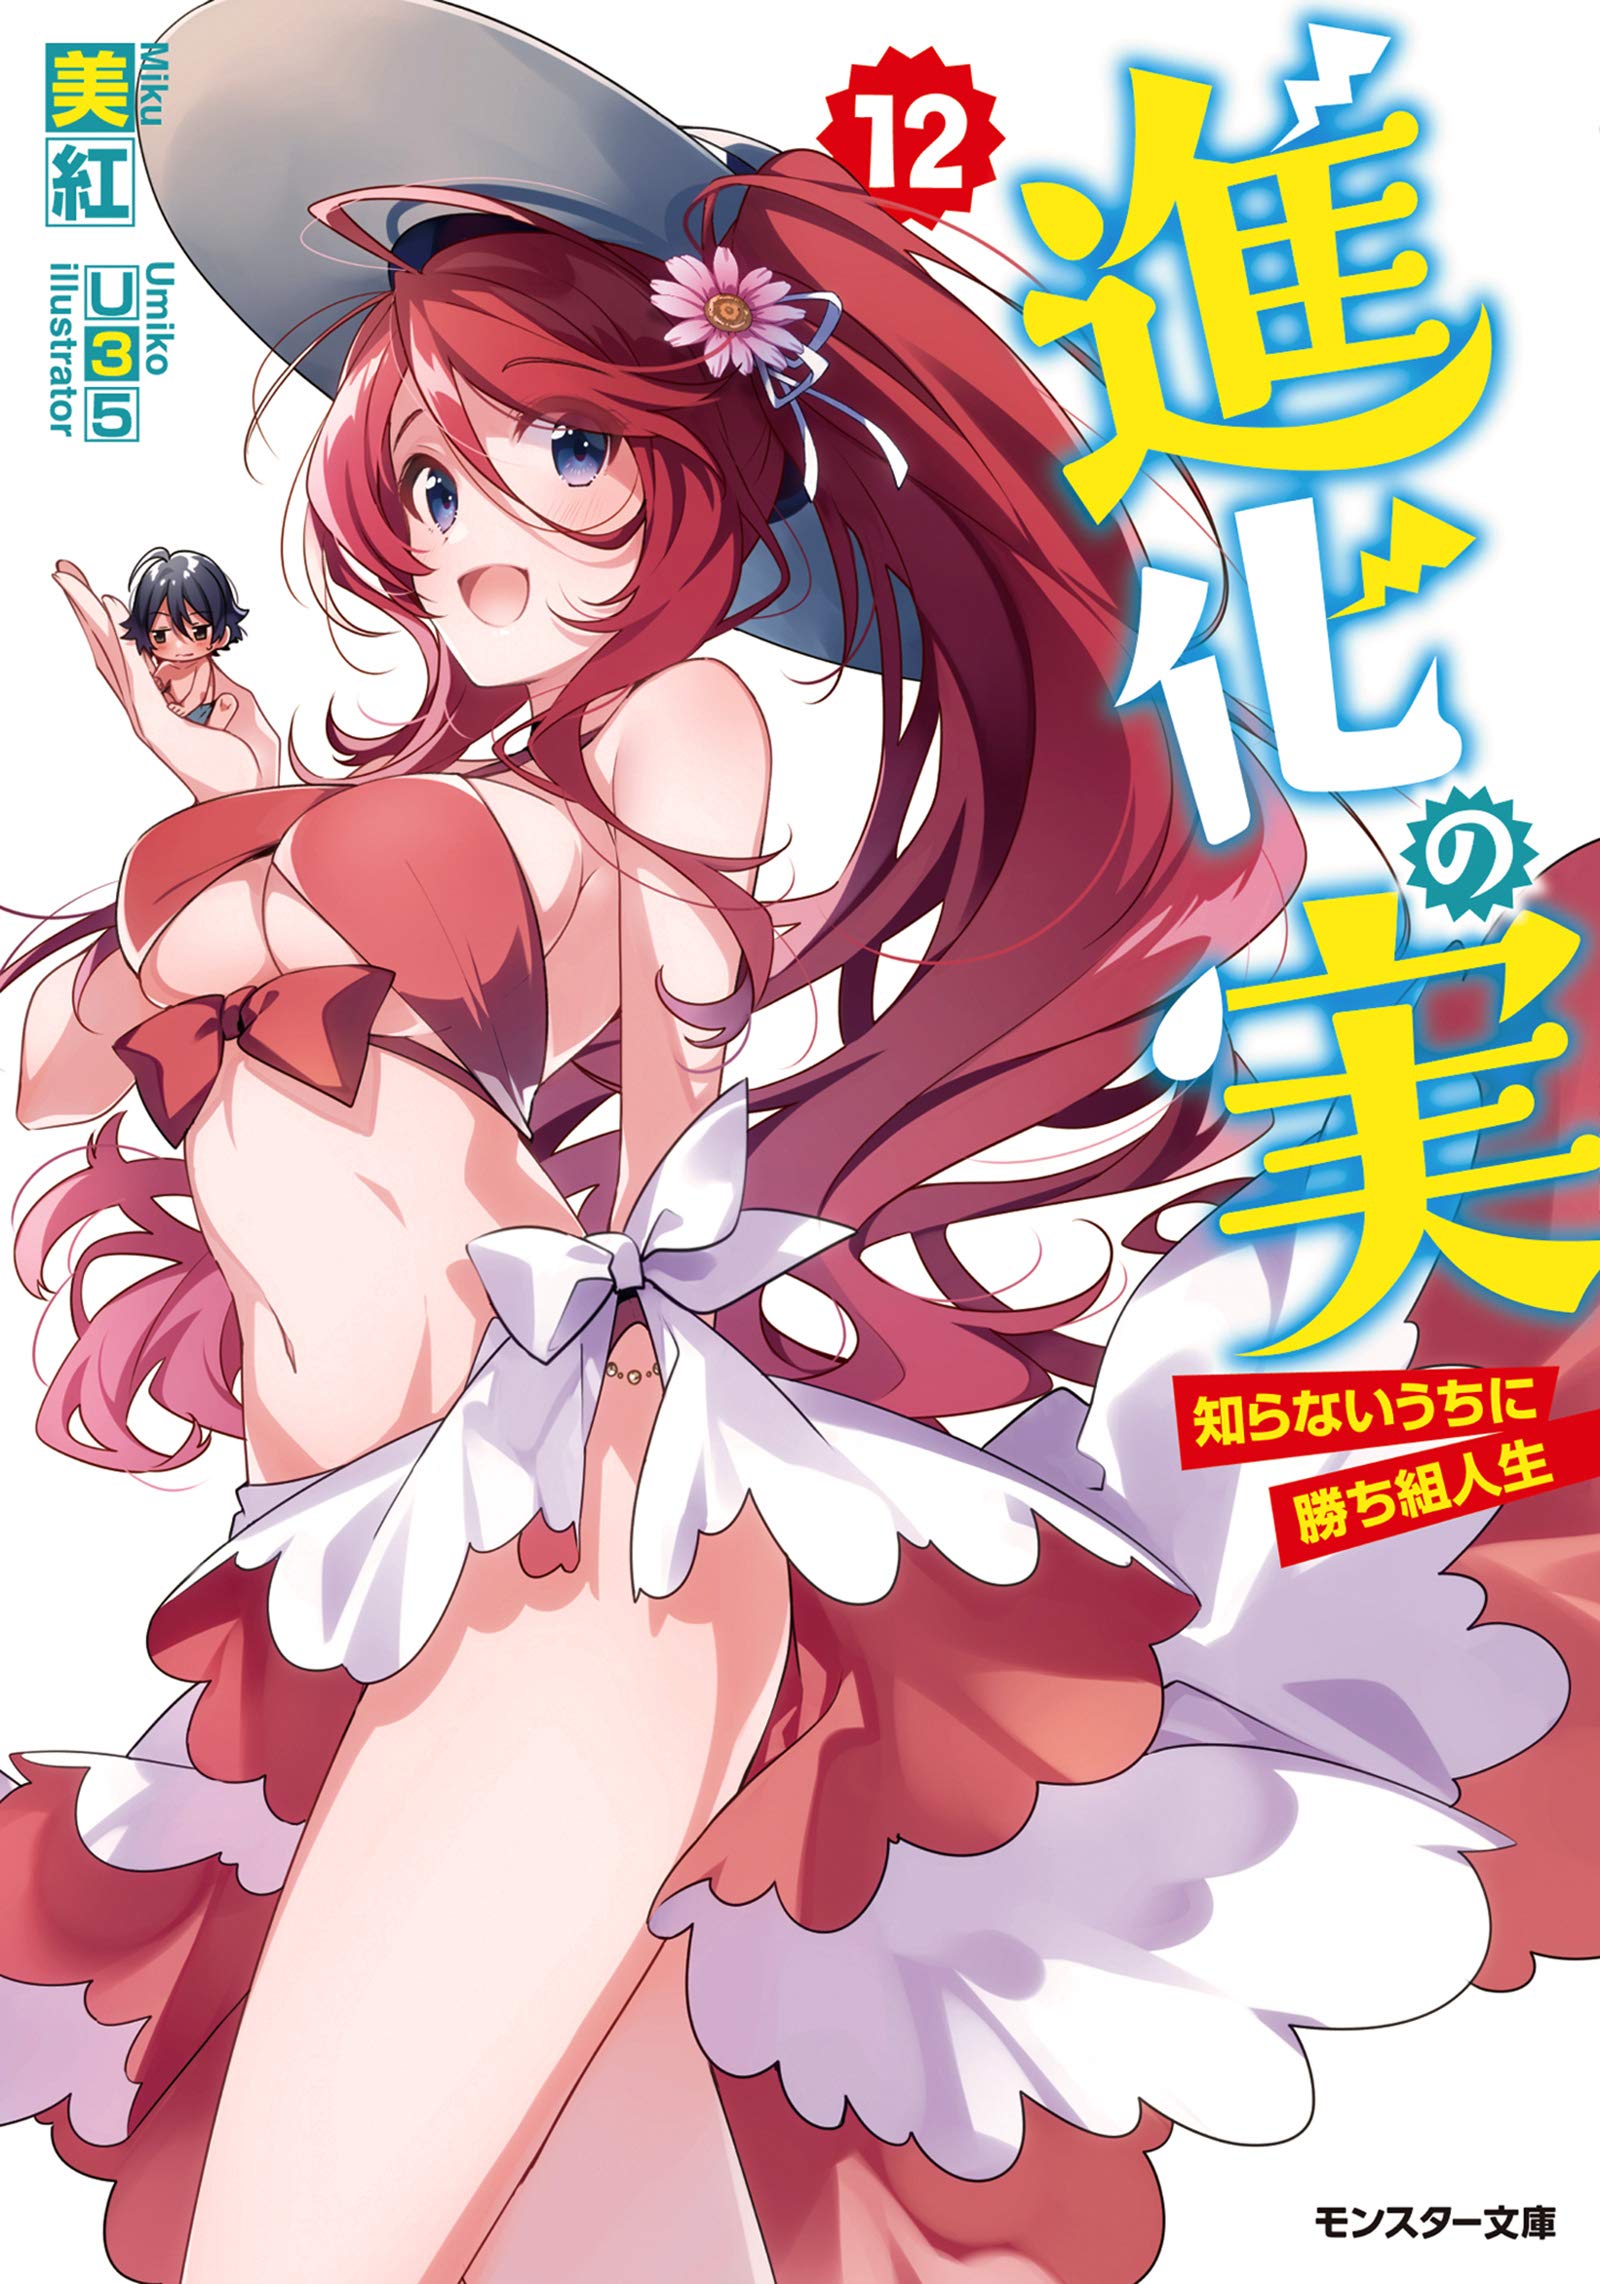 Read Shinka no Mi by Miku Free On MangaKakalot - Chapter 38.1